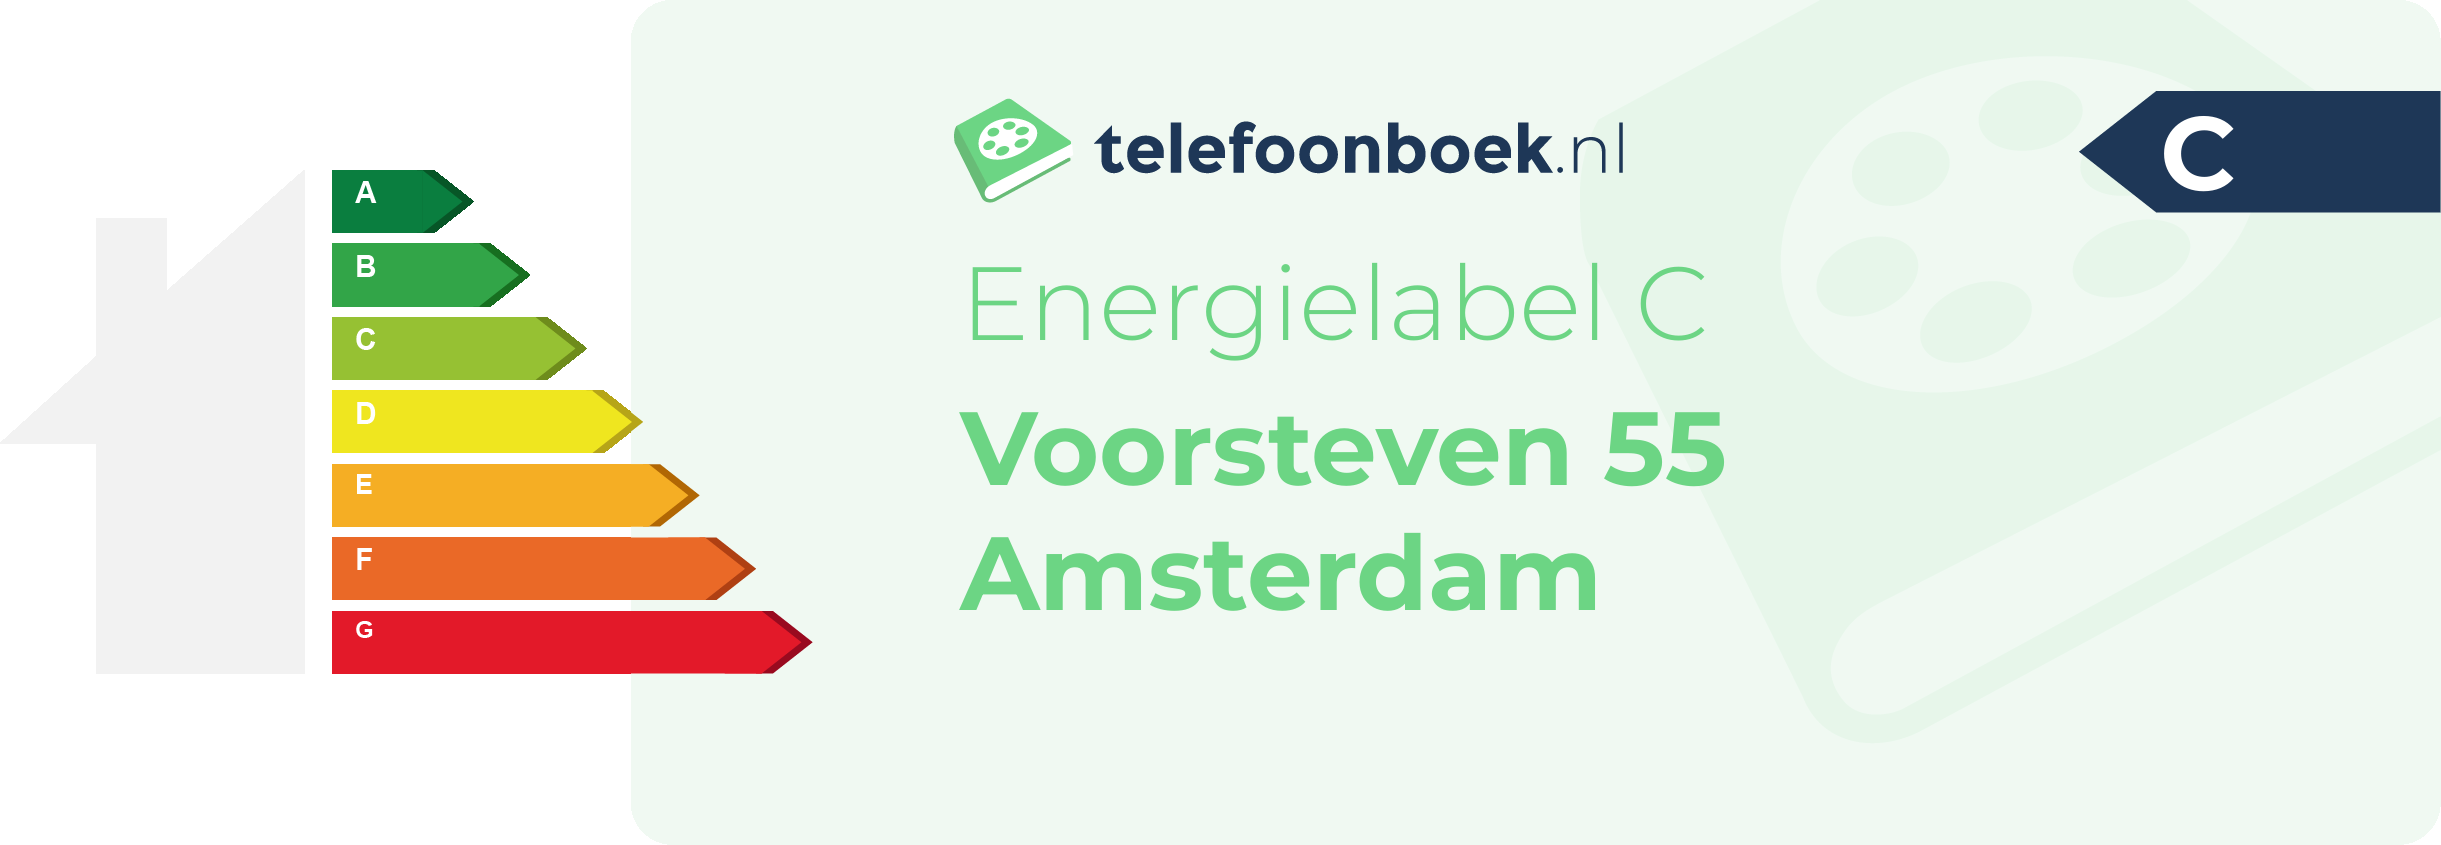 Energielabel Voorsteven 55 Amsterdam